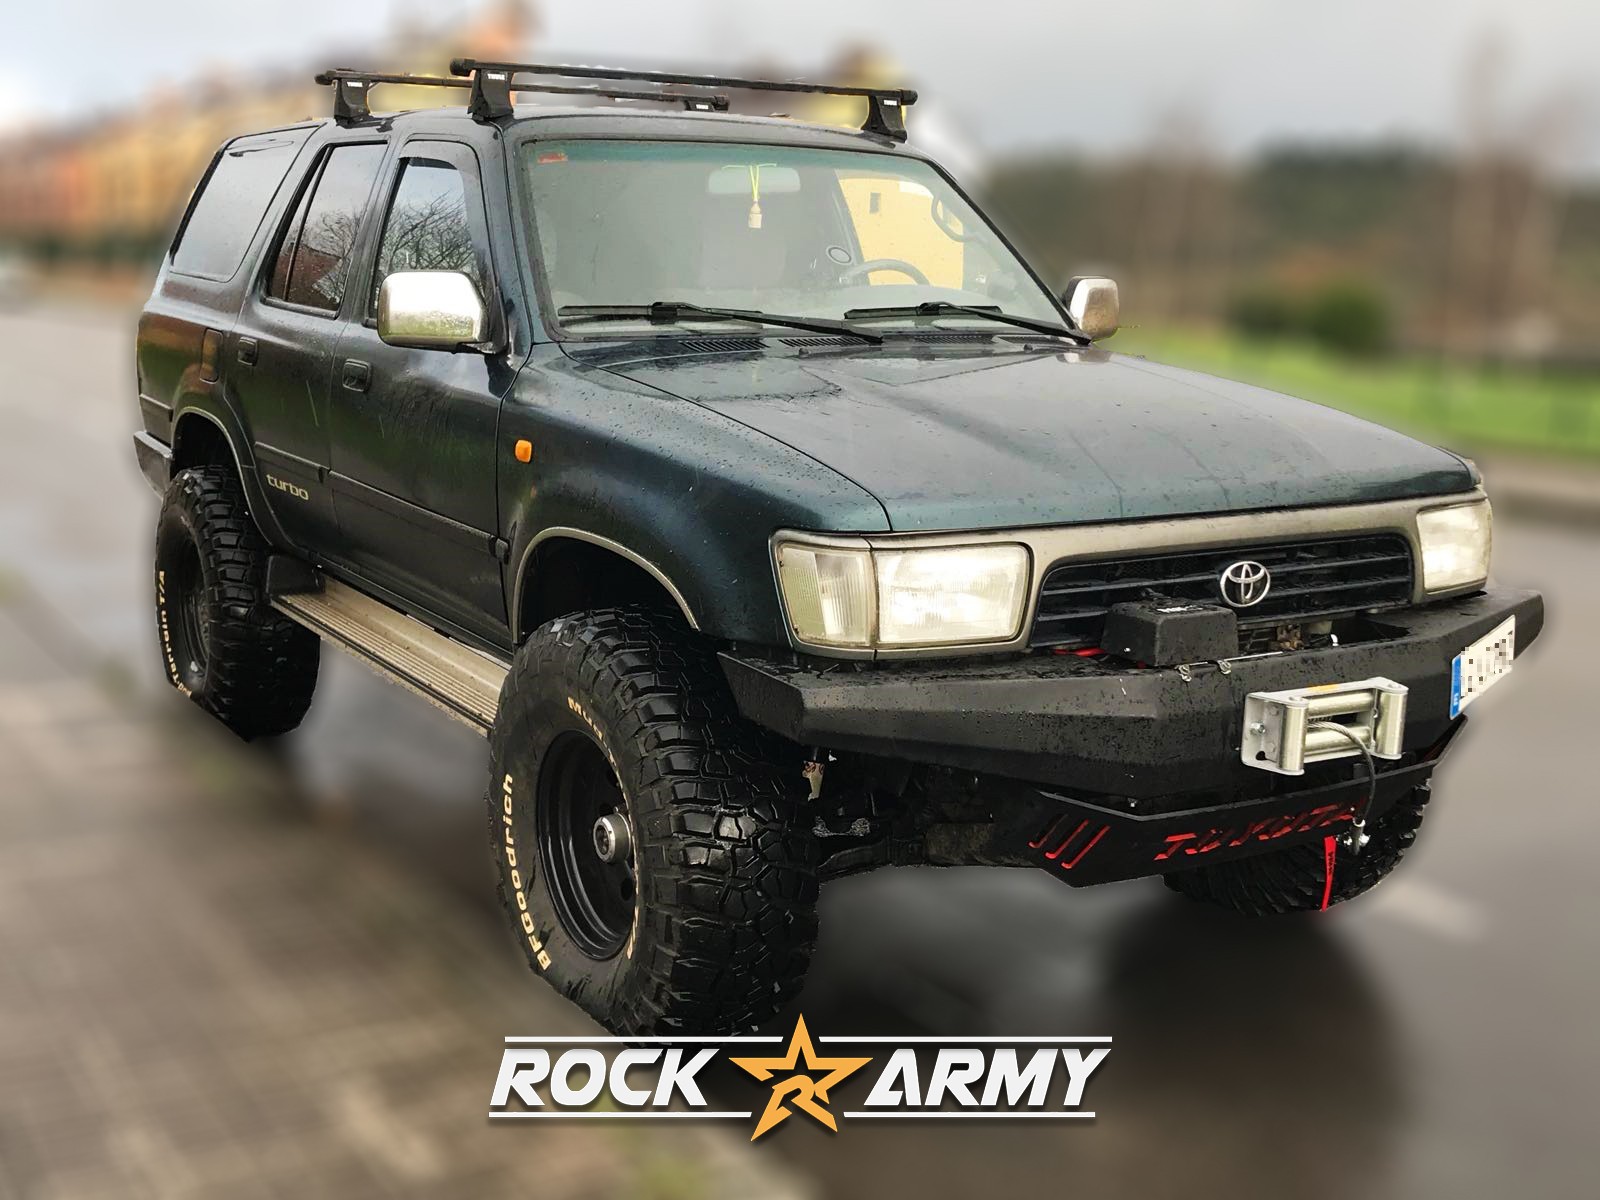 Pare-choc avant ROCK ARMY en acier 5 côtés avec platine treuil intégrée Toyota 4Runner 1990-1995